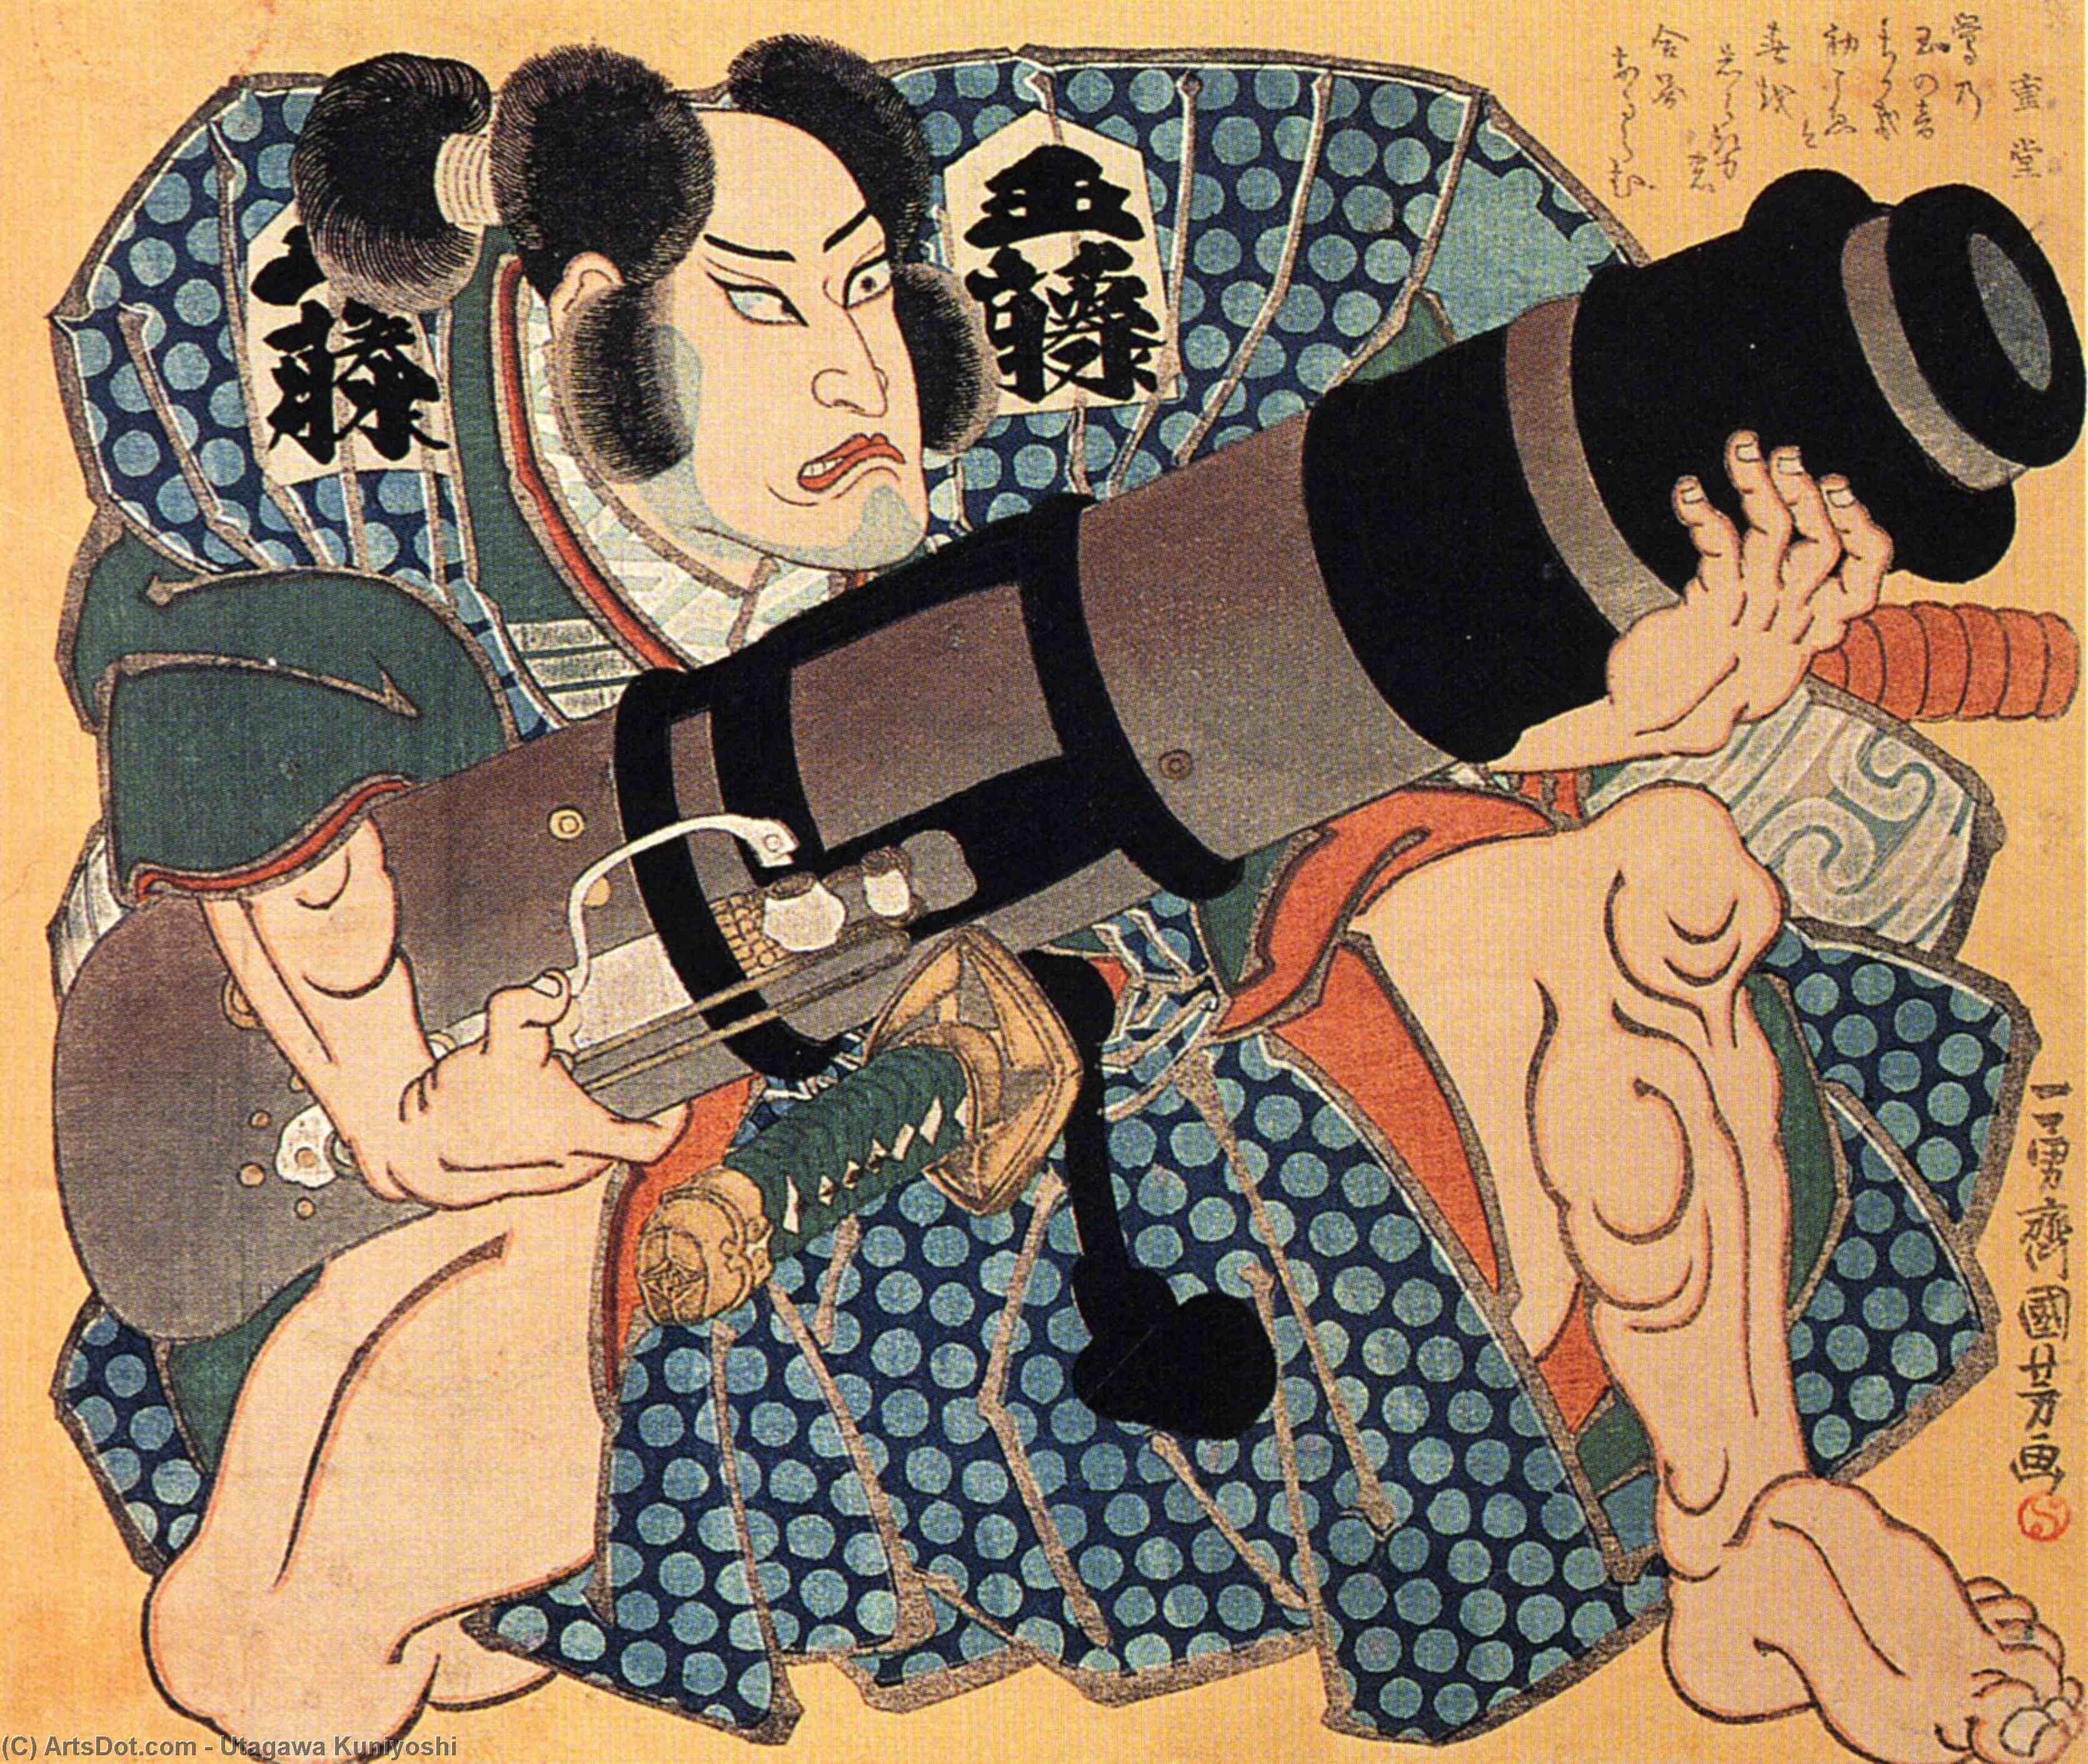 WikiOO.org - אנציקלופדיה לאמנויות יפות - ציור, יצירות אמנות Utagawa Kuniyoshi - The actor (9)